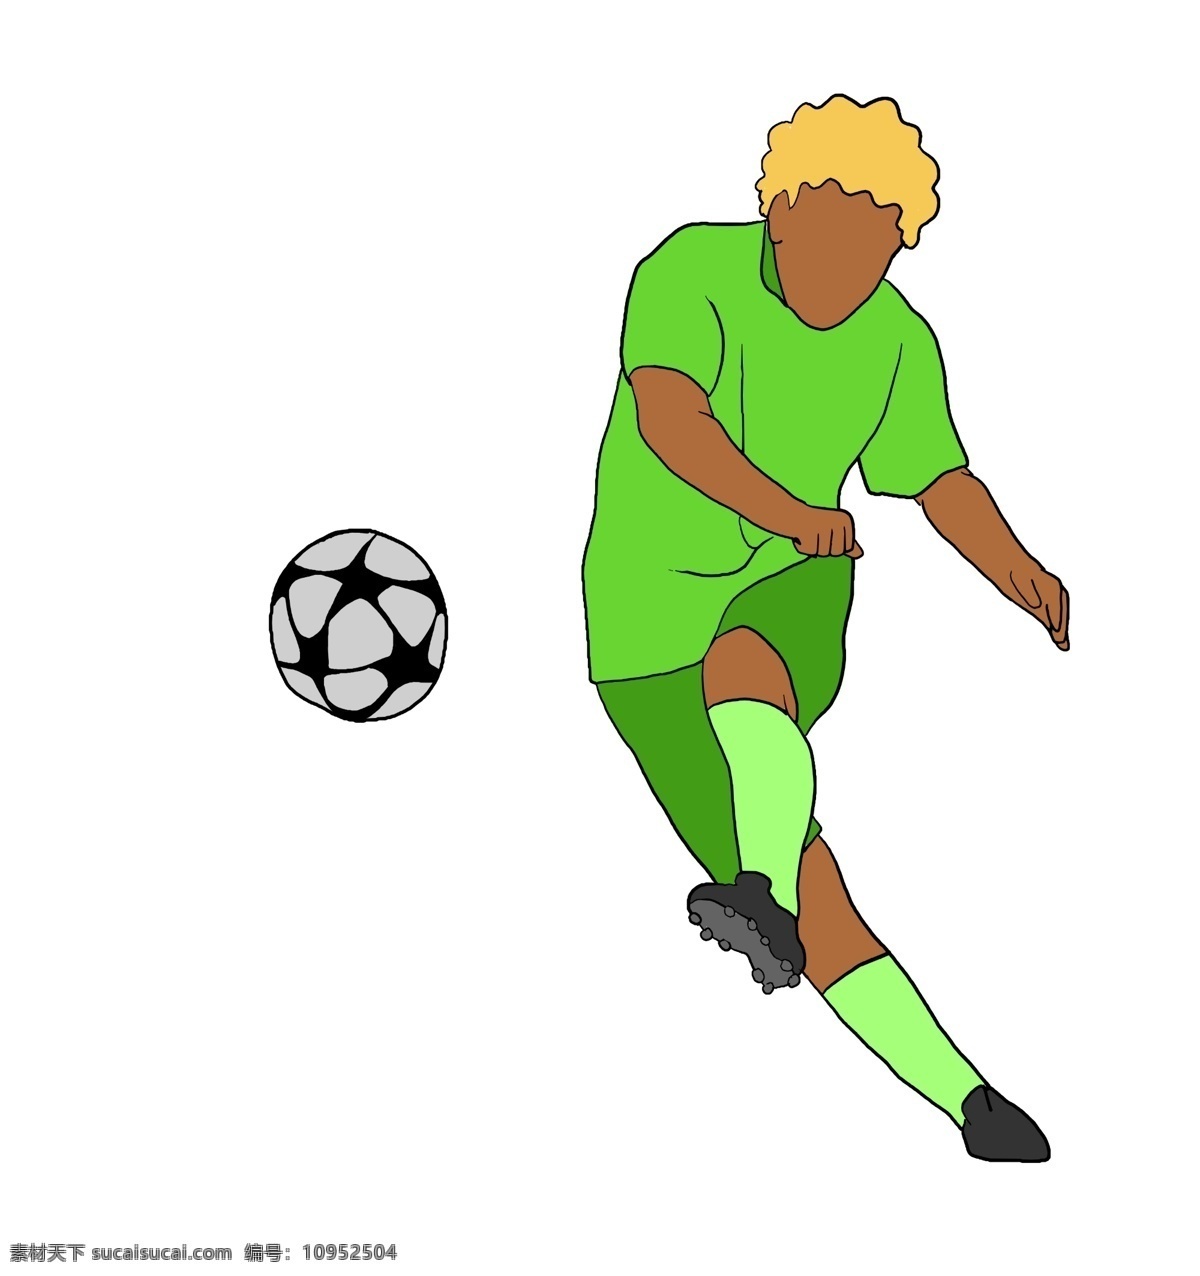 黑白 足球 小 男孩 黑白足球 圆形足球 踢 奔跑的小男孩 卡通的人物 运动健身